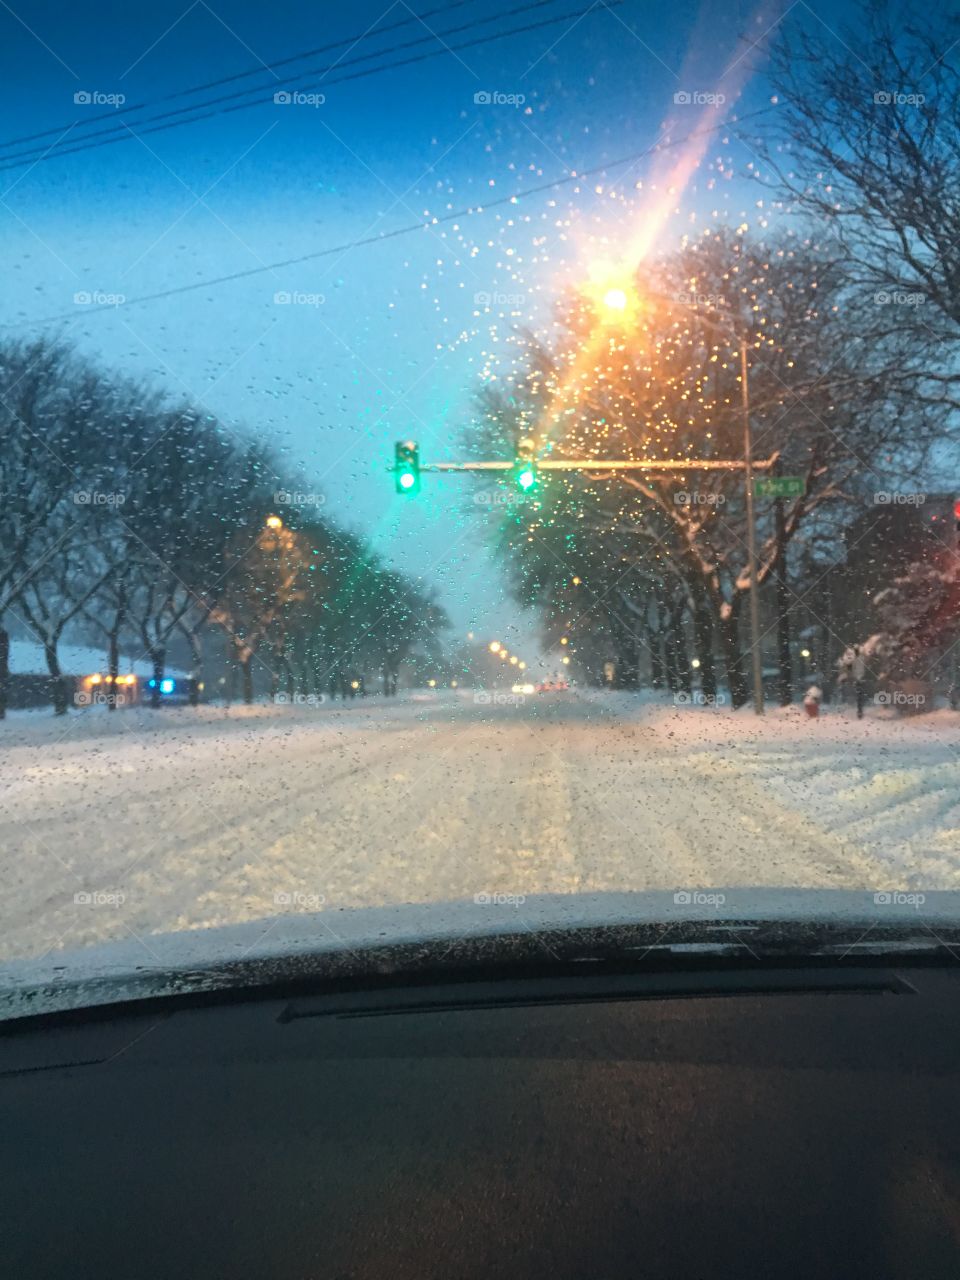 Snowy drive